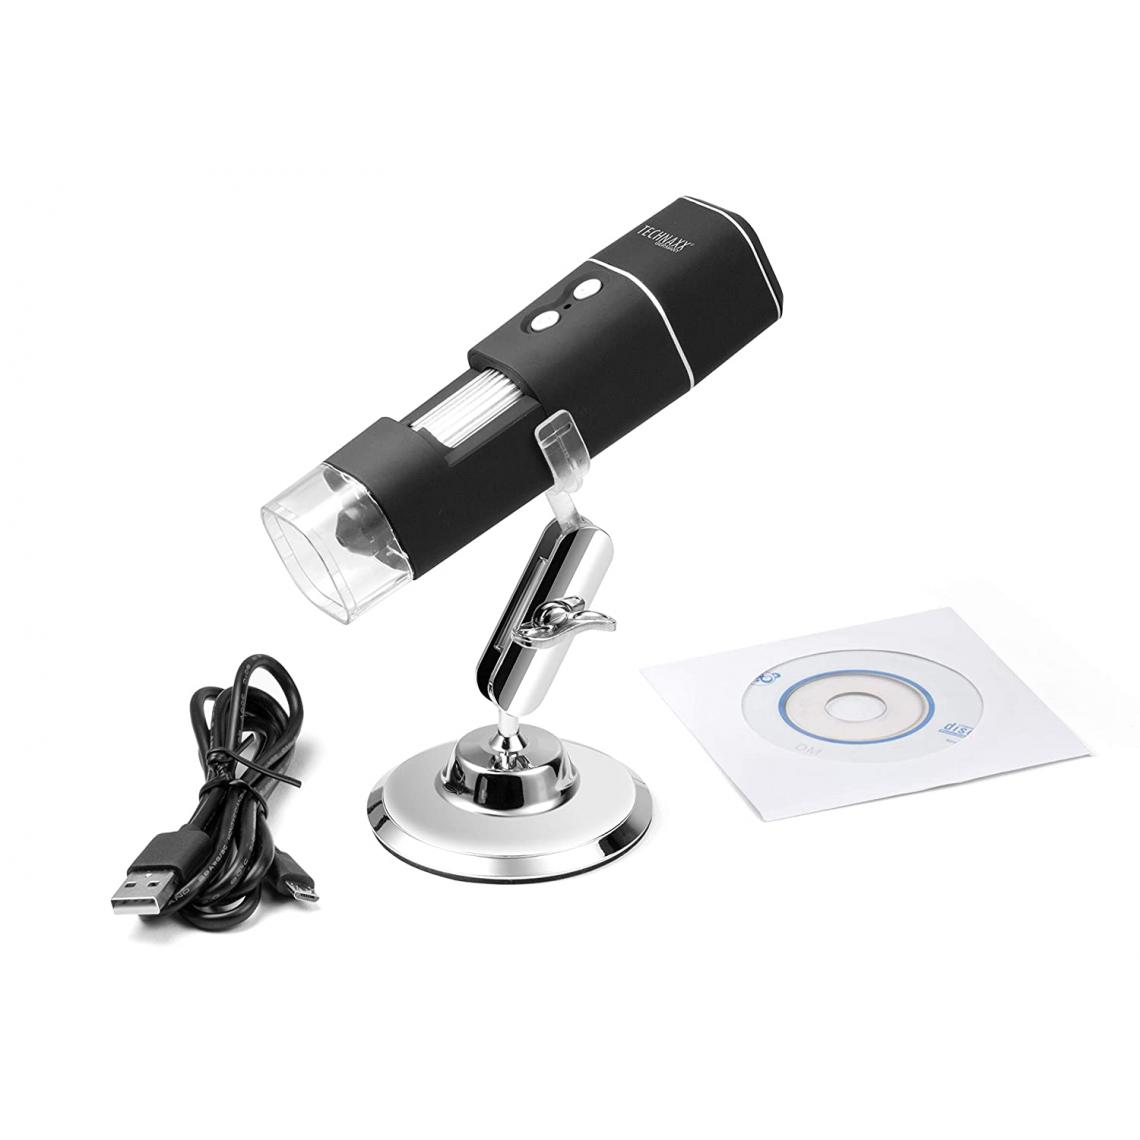 Technaxx - Technaxx - Microsocpe TX-158 sans fil WiFi FullHD grossissement X1000 - Caméra de surveillance connectée